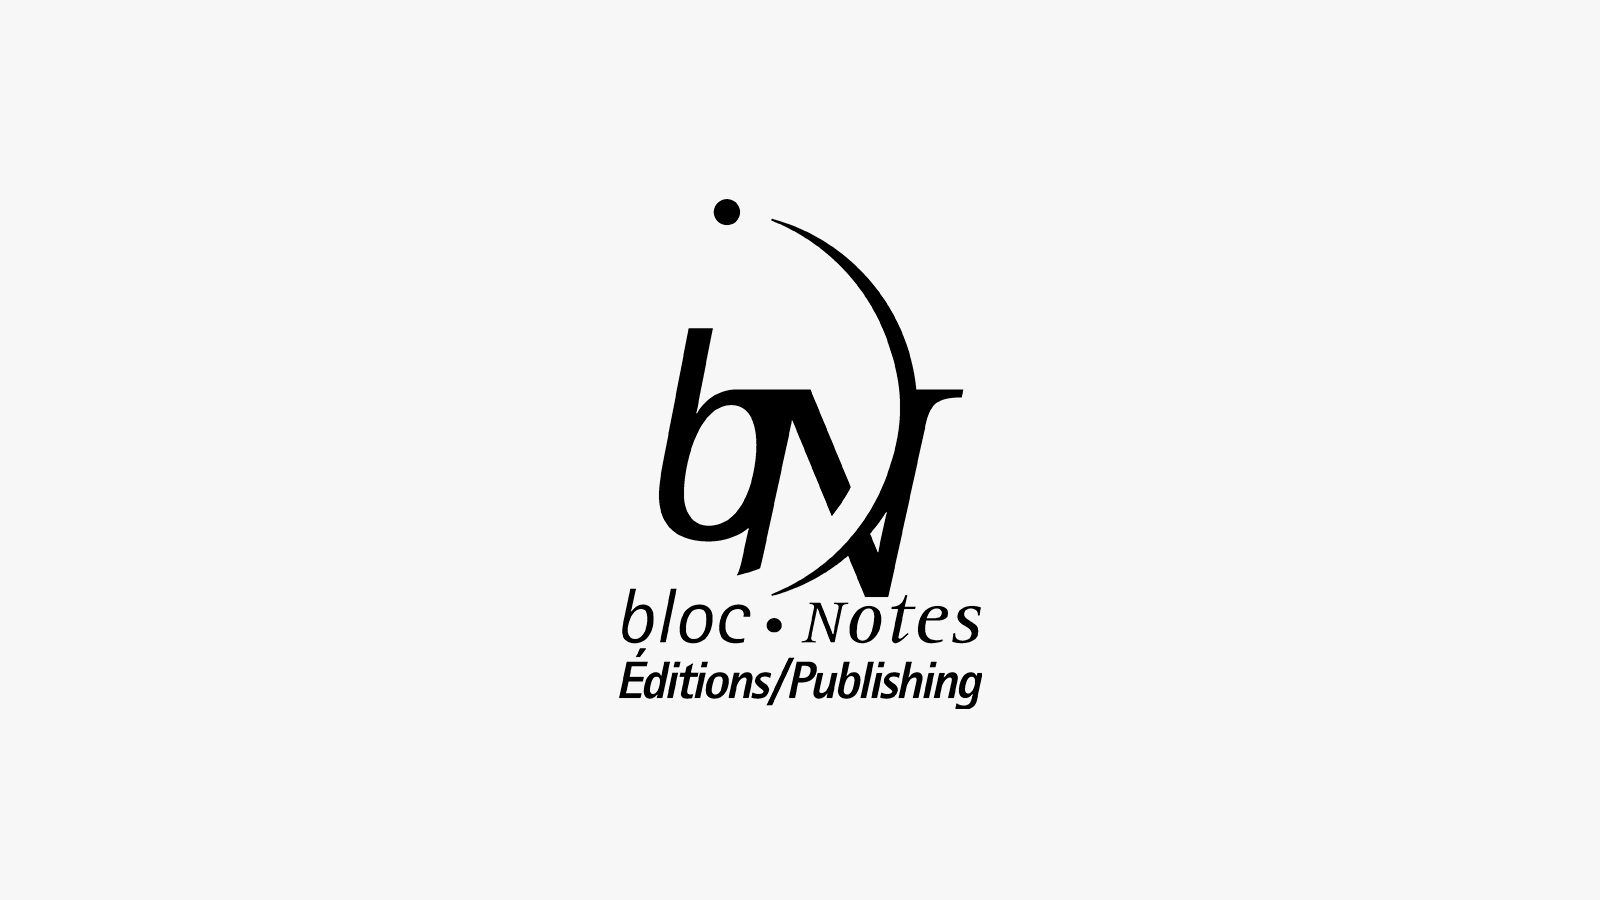 Bloc notes éphéméride 2021 مفكرة - Librairie la liberté